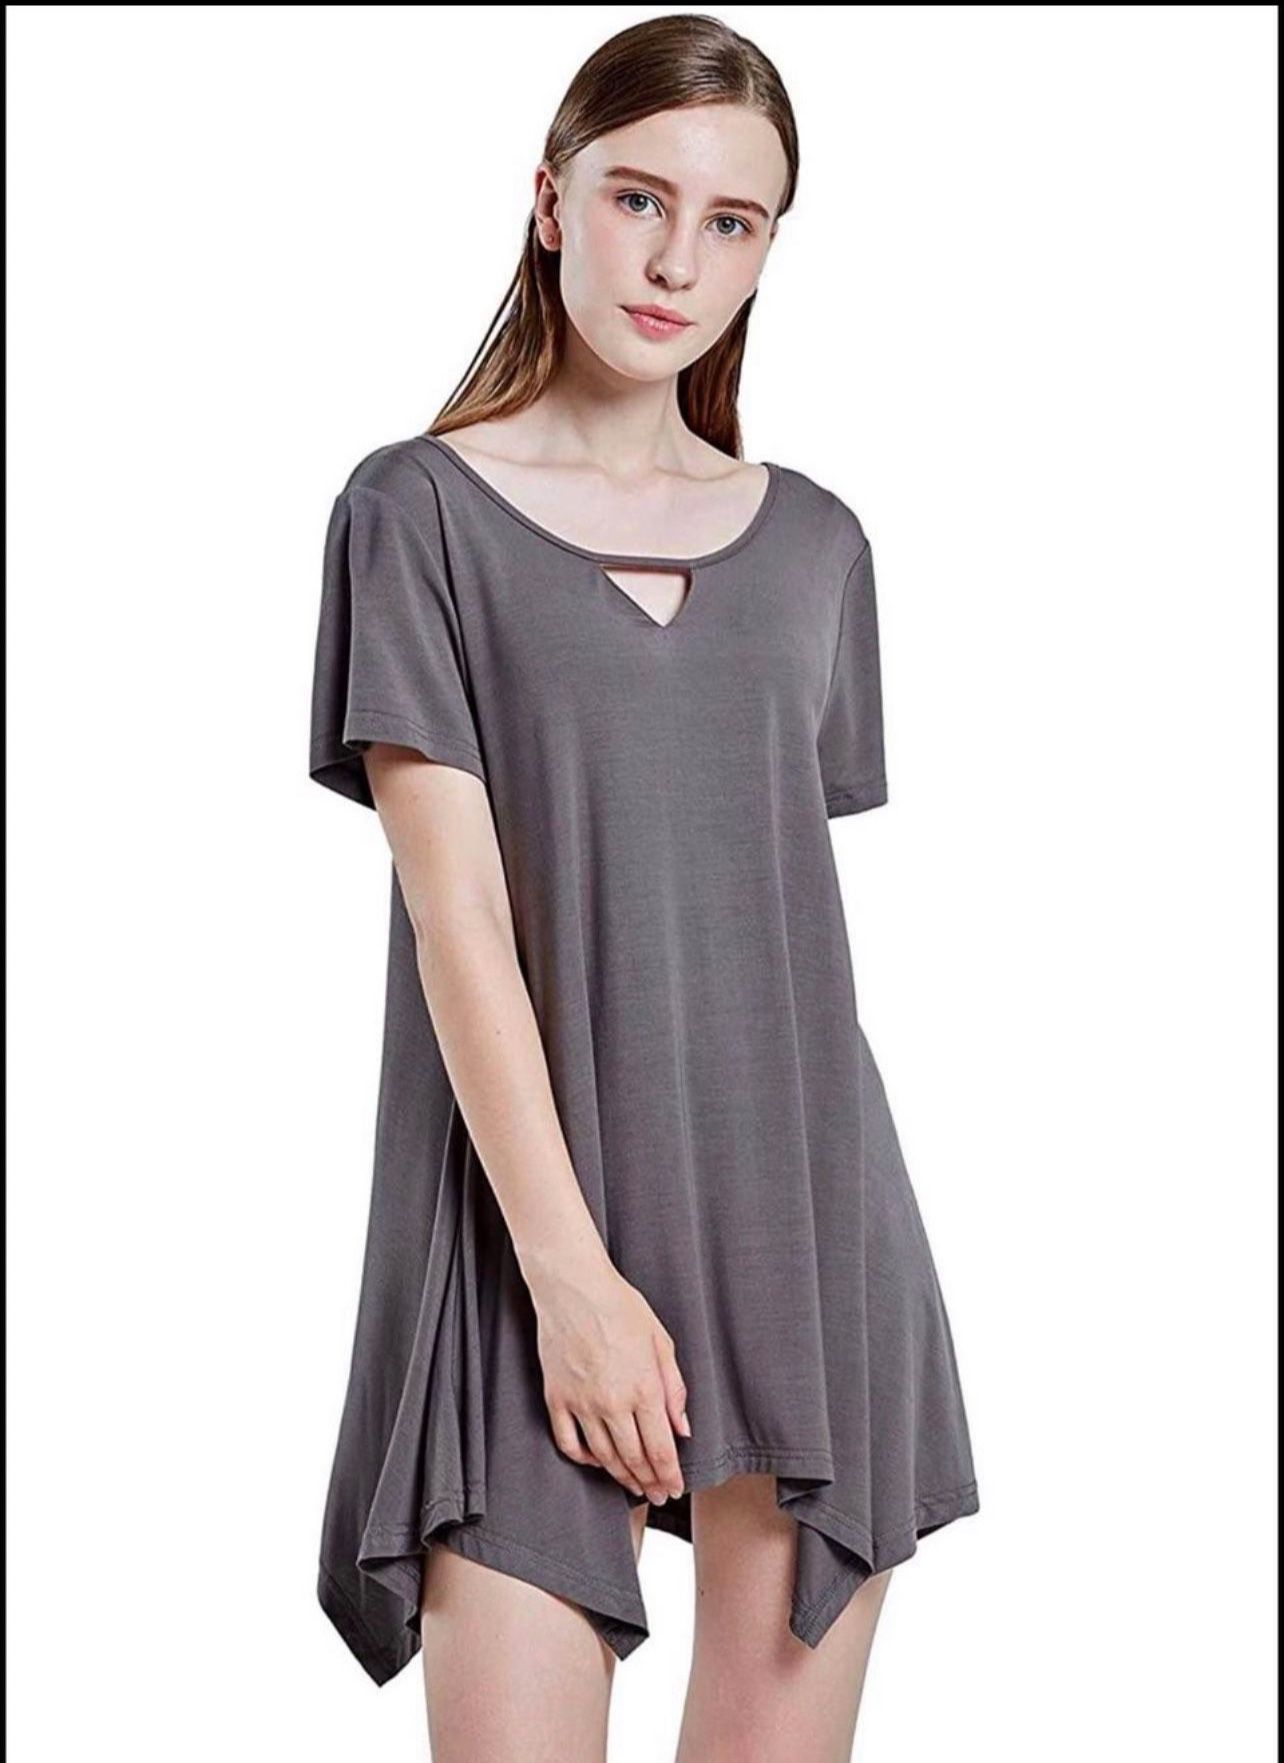 Brandnew Sleepwear Women's Nightshirts Scoop Neck Sleep Shirt  Size(Medium/Large,XL,2XL,3XL)